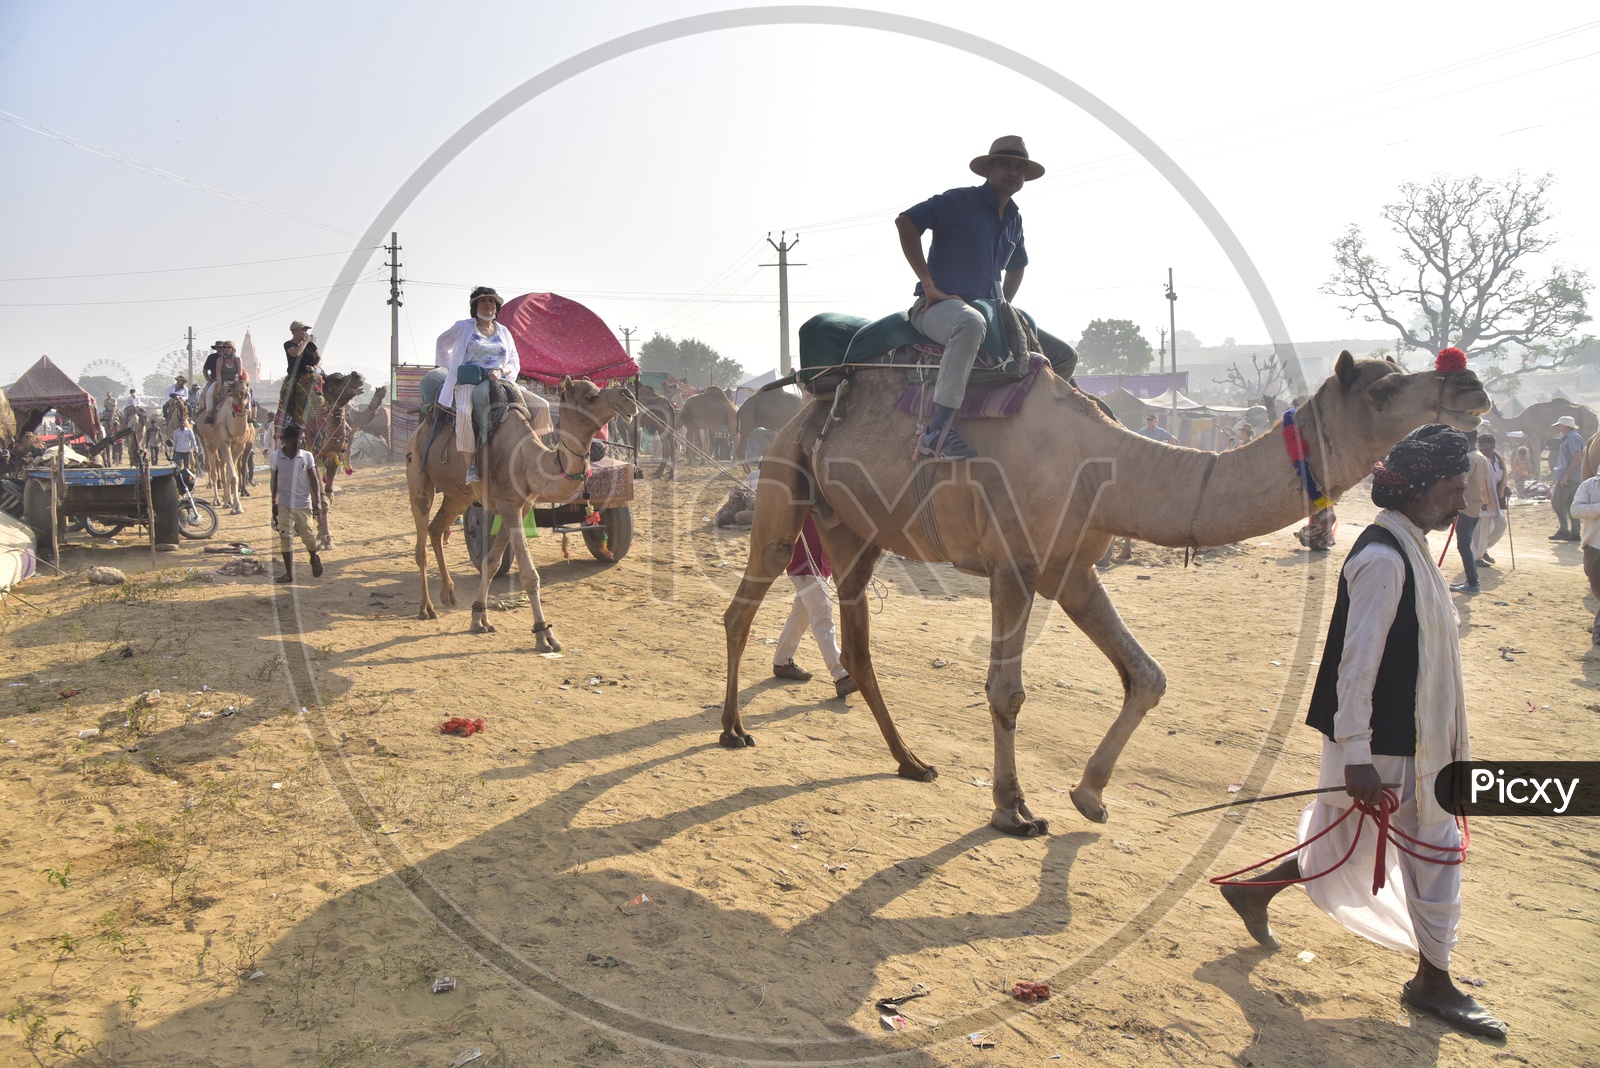 Visitors Riding Camels at Pushkar Camel Fair, 2018